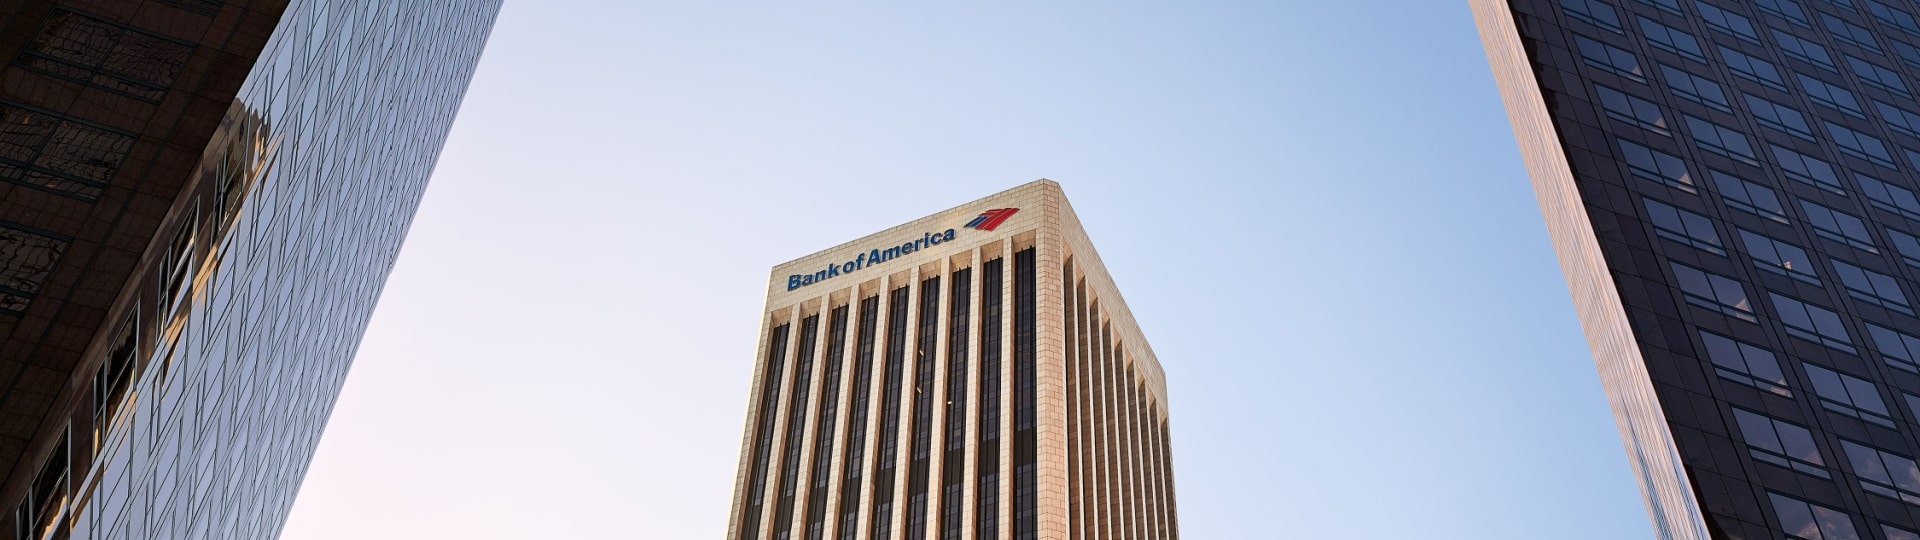 Zisk Bank of America ve čtvrtletí klesl